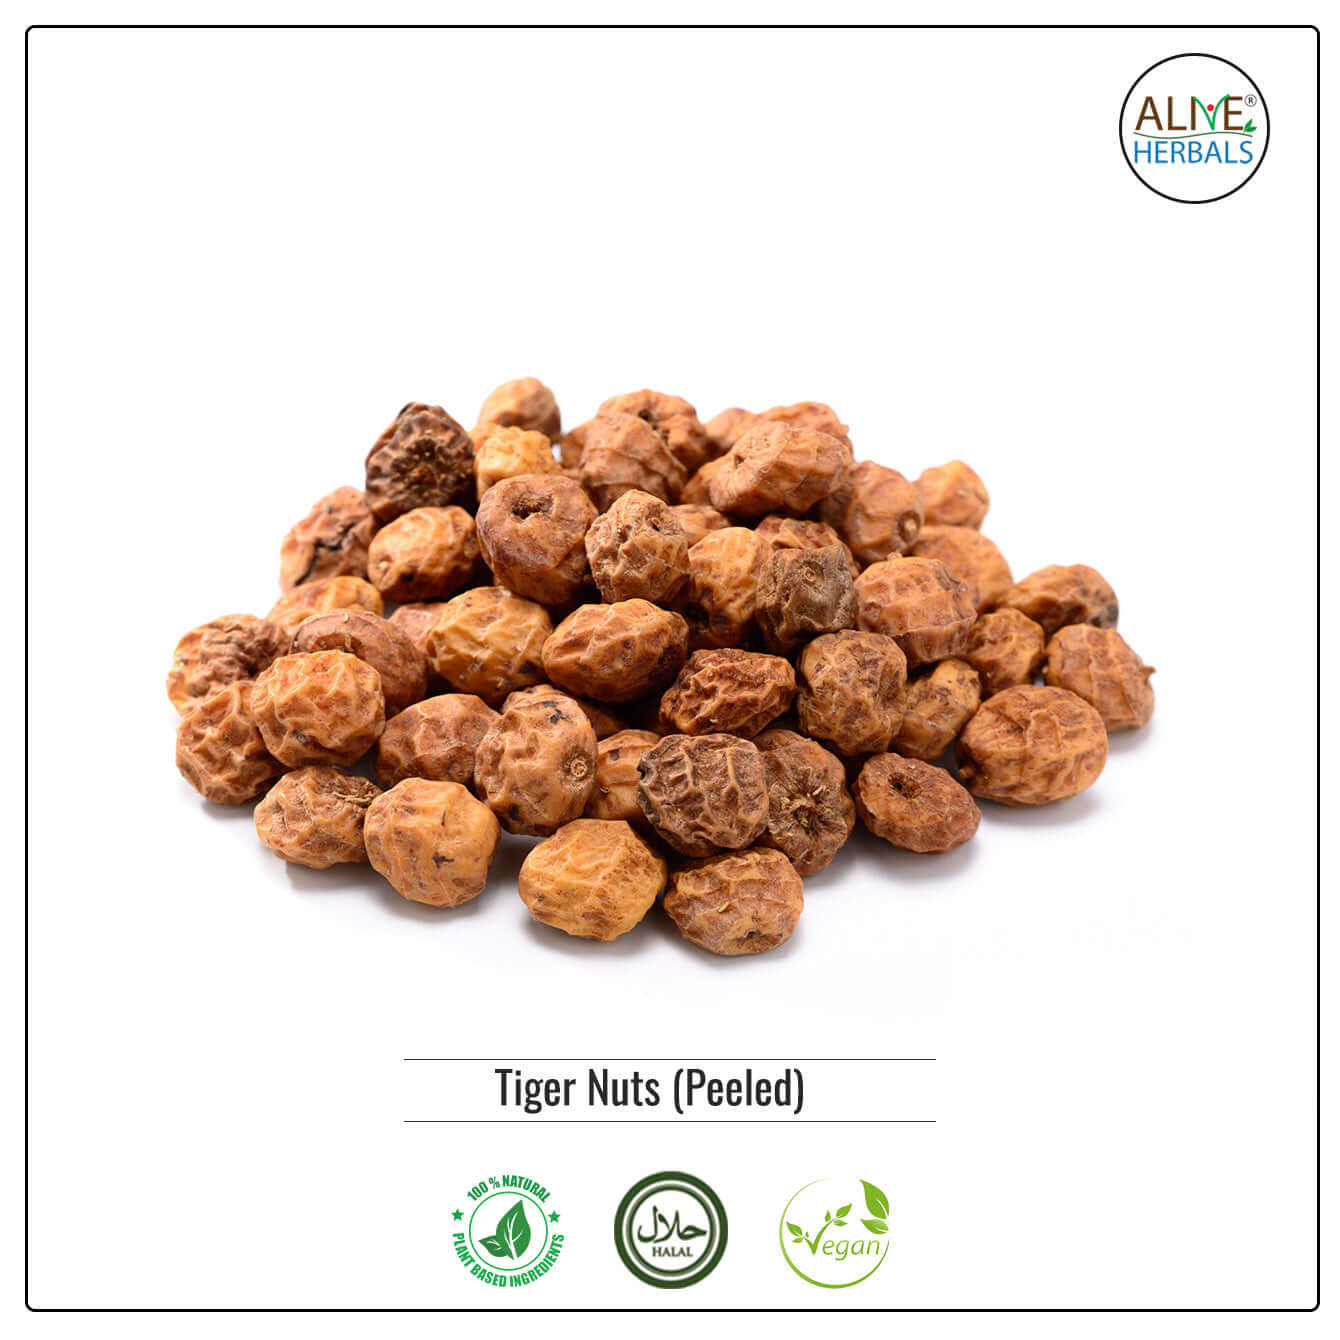 Peeled Tiger Nuts - Alive Herbals